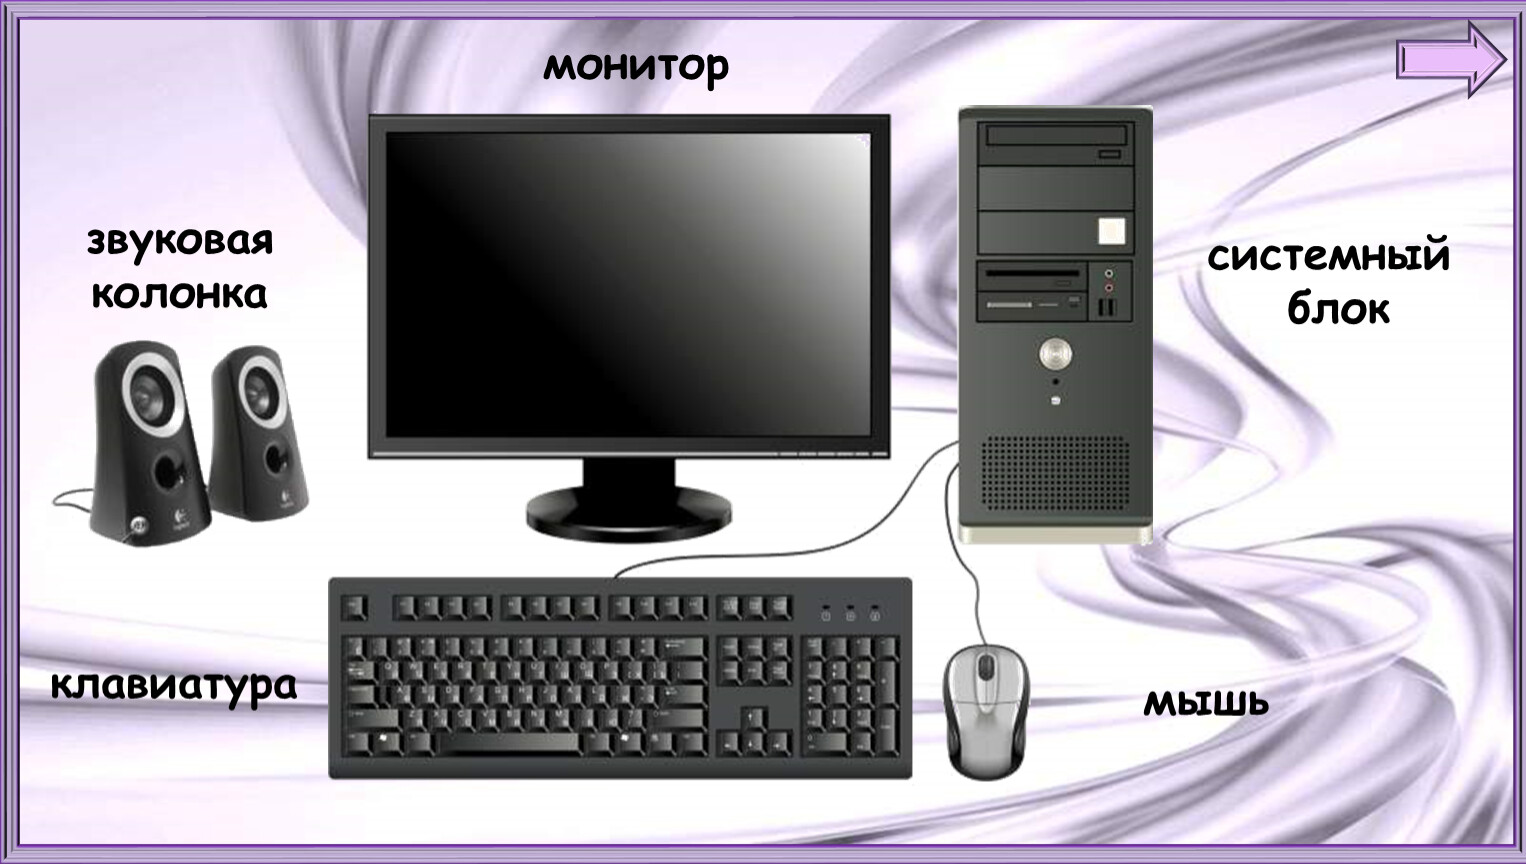 Монитор мыши. Клавиатура мышь монитор системный блок виндовс 3.1. Монитор клавиатура мышь системный блок колонки принтер. Монитор мышка клавиатура системный блок. Компьютер системный блок монитор звуковая колонка мышь клавиатура.